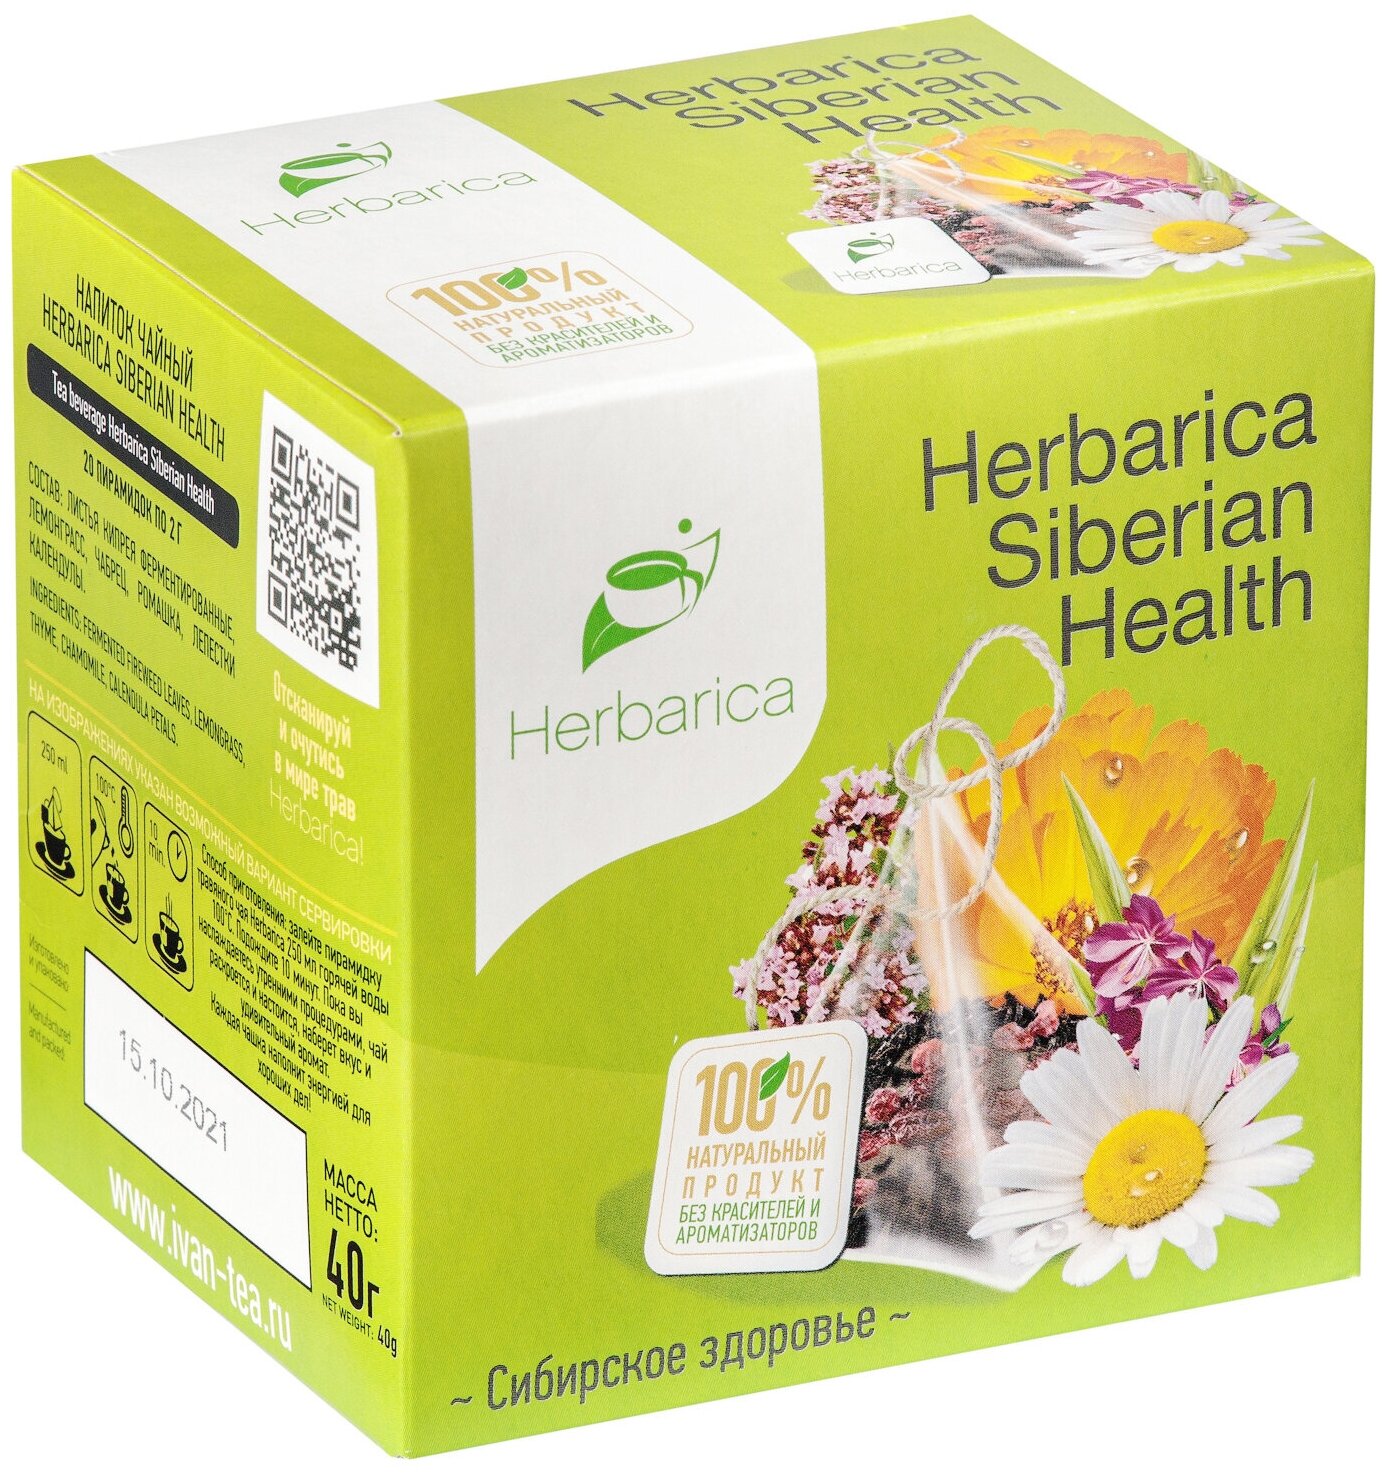 Herbarica Siberian Health Гербарика Сибирское здоровье 20 пирамидок Травяной чай иван-чай, лемонграсс, чабрец, ромашка, лепестки календулы - фотография № 8